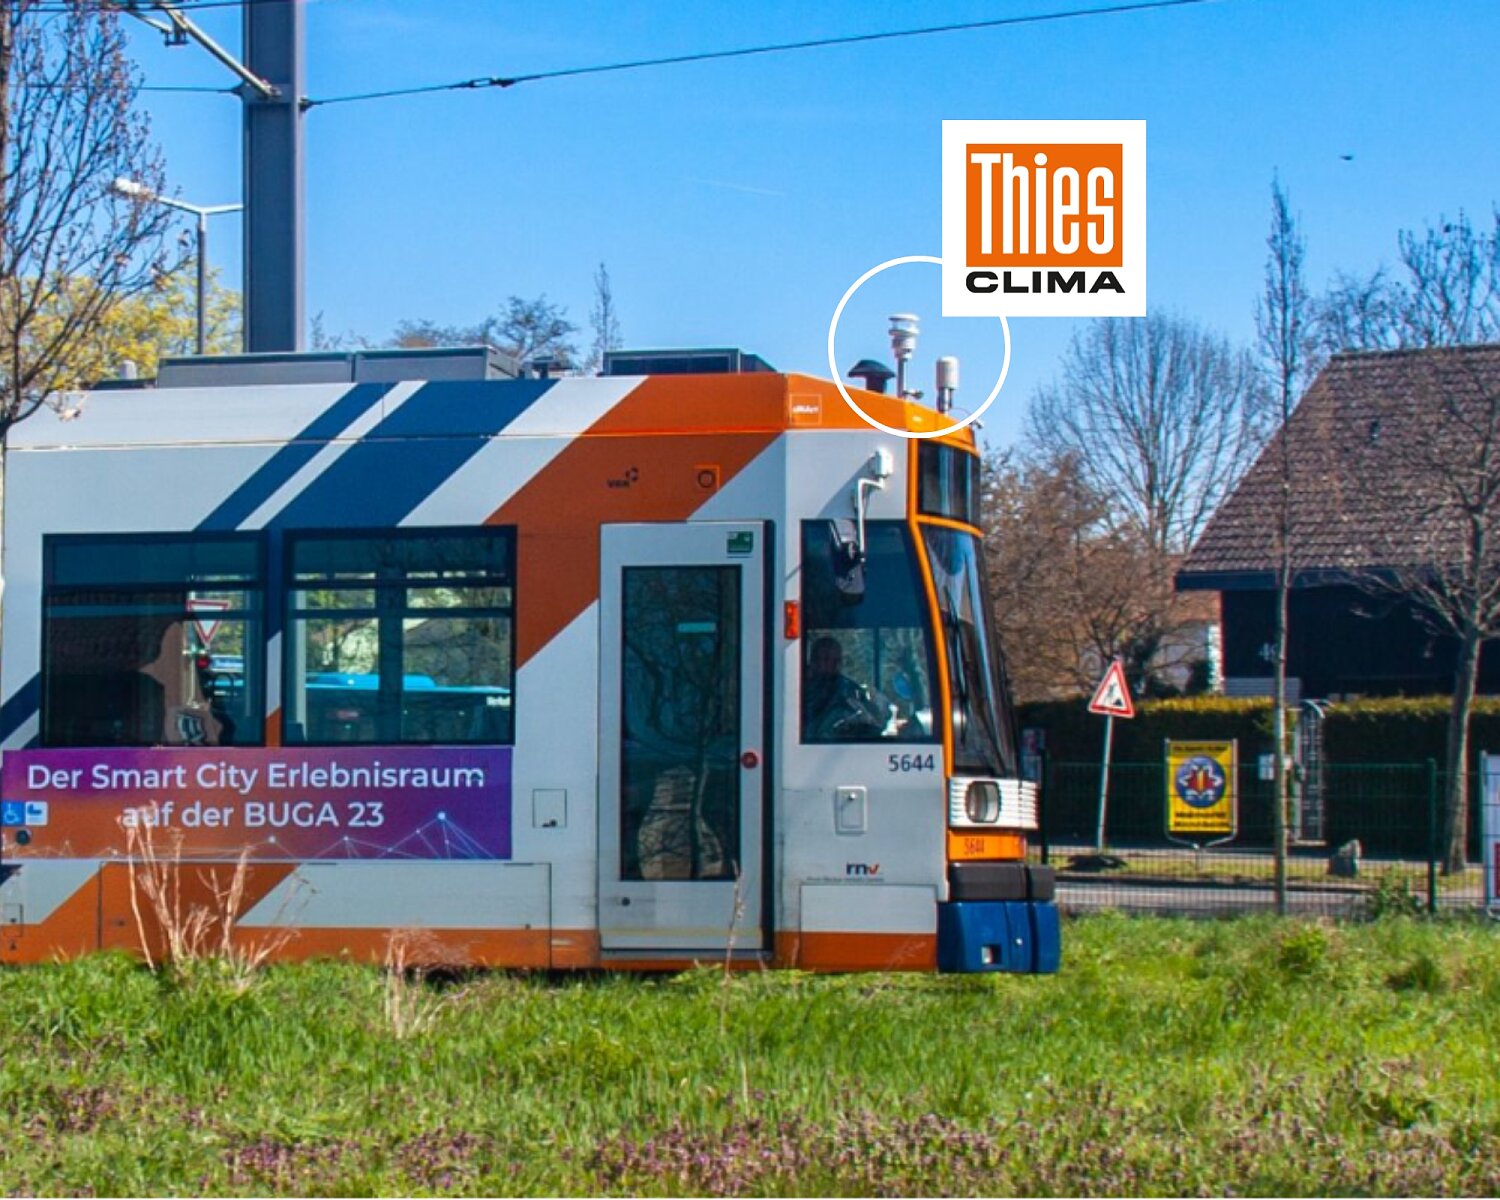 Tramvaj vybavená mobilní meteostanicí stanicí od Thies Clima.